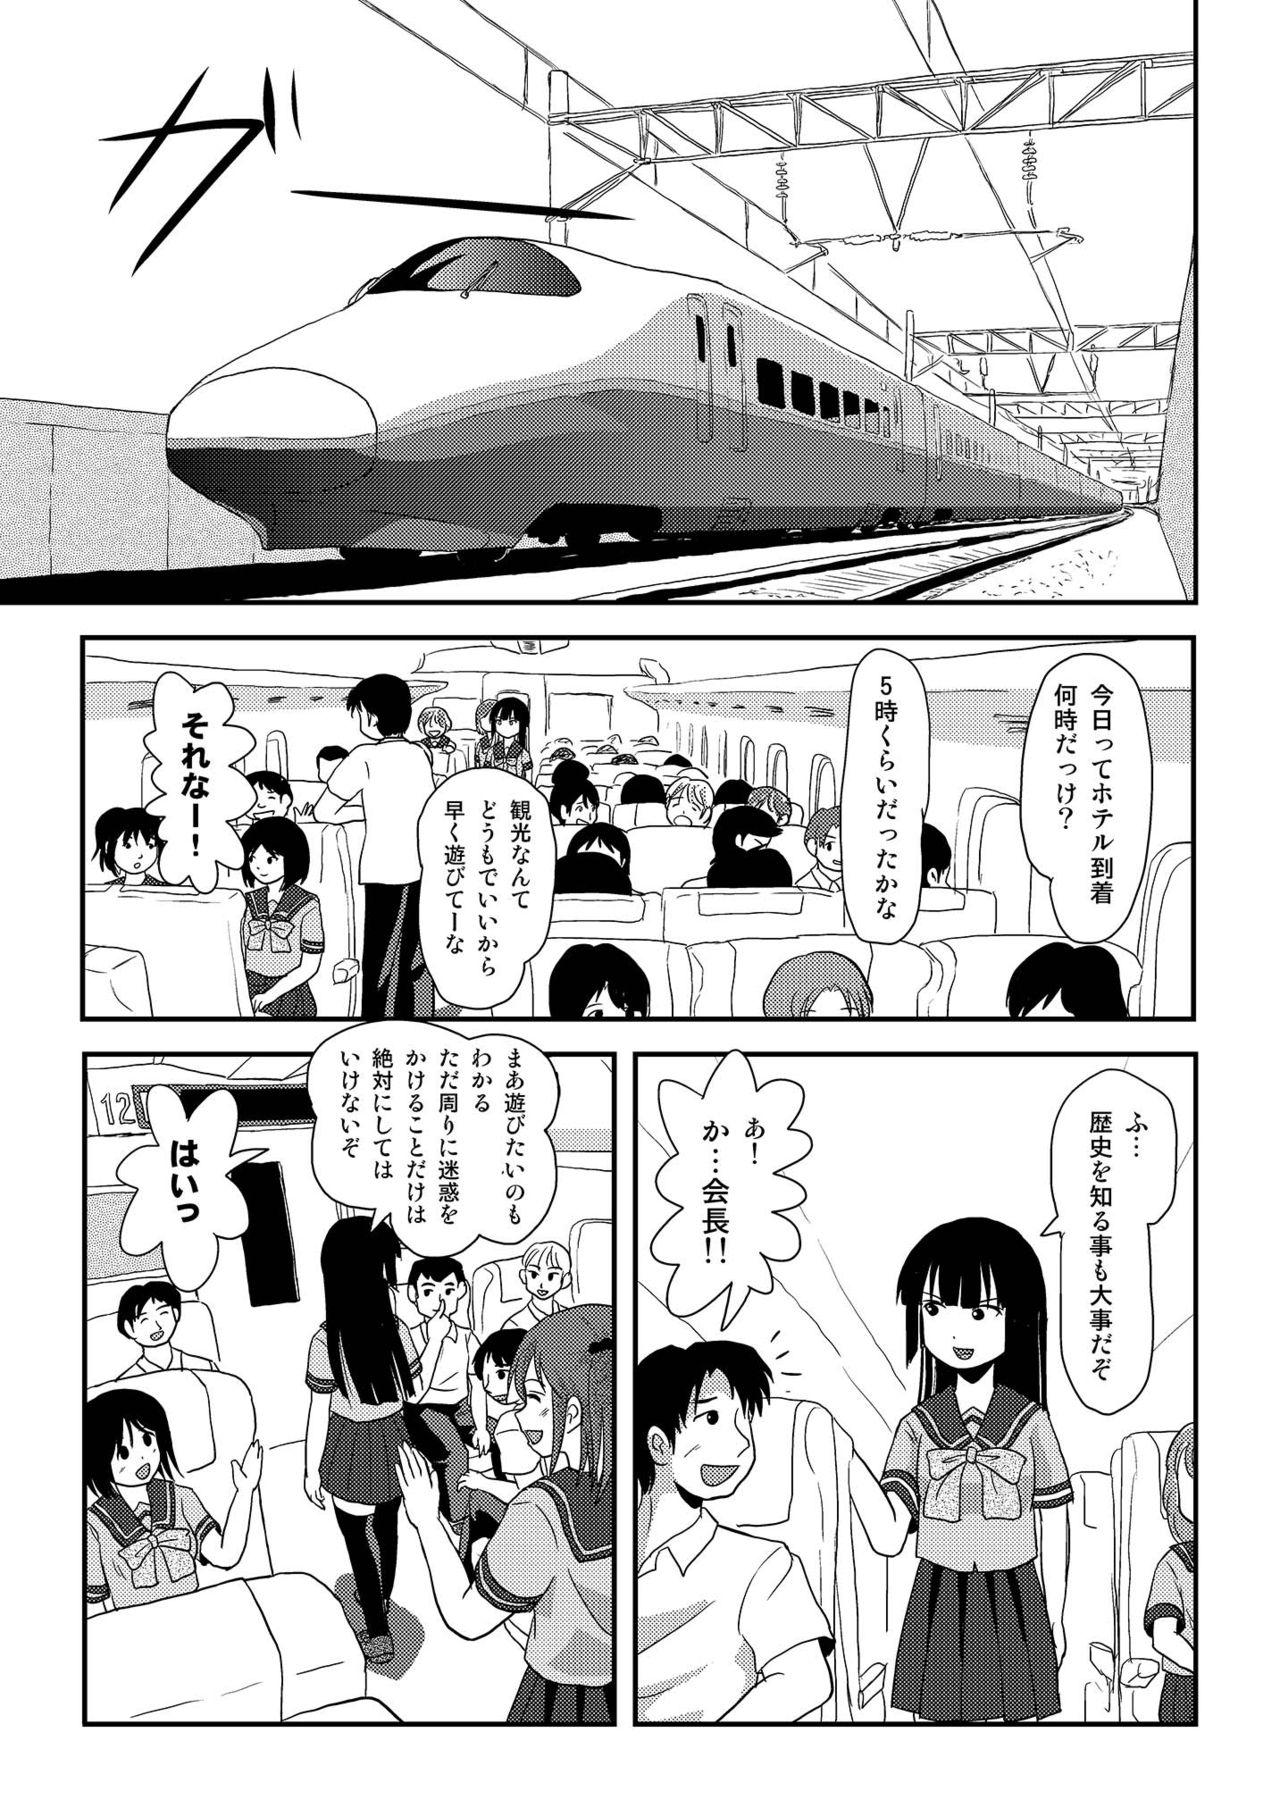 4some Sakura Kotaka no Roshutsubiyori 6 - Original Anal Licking - Page 5